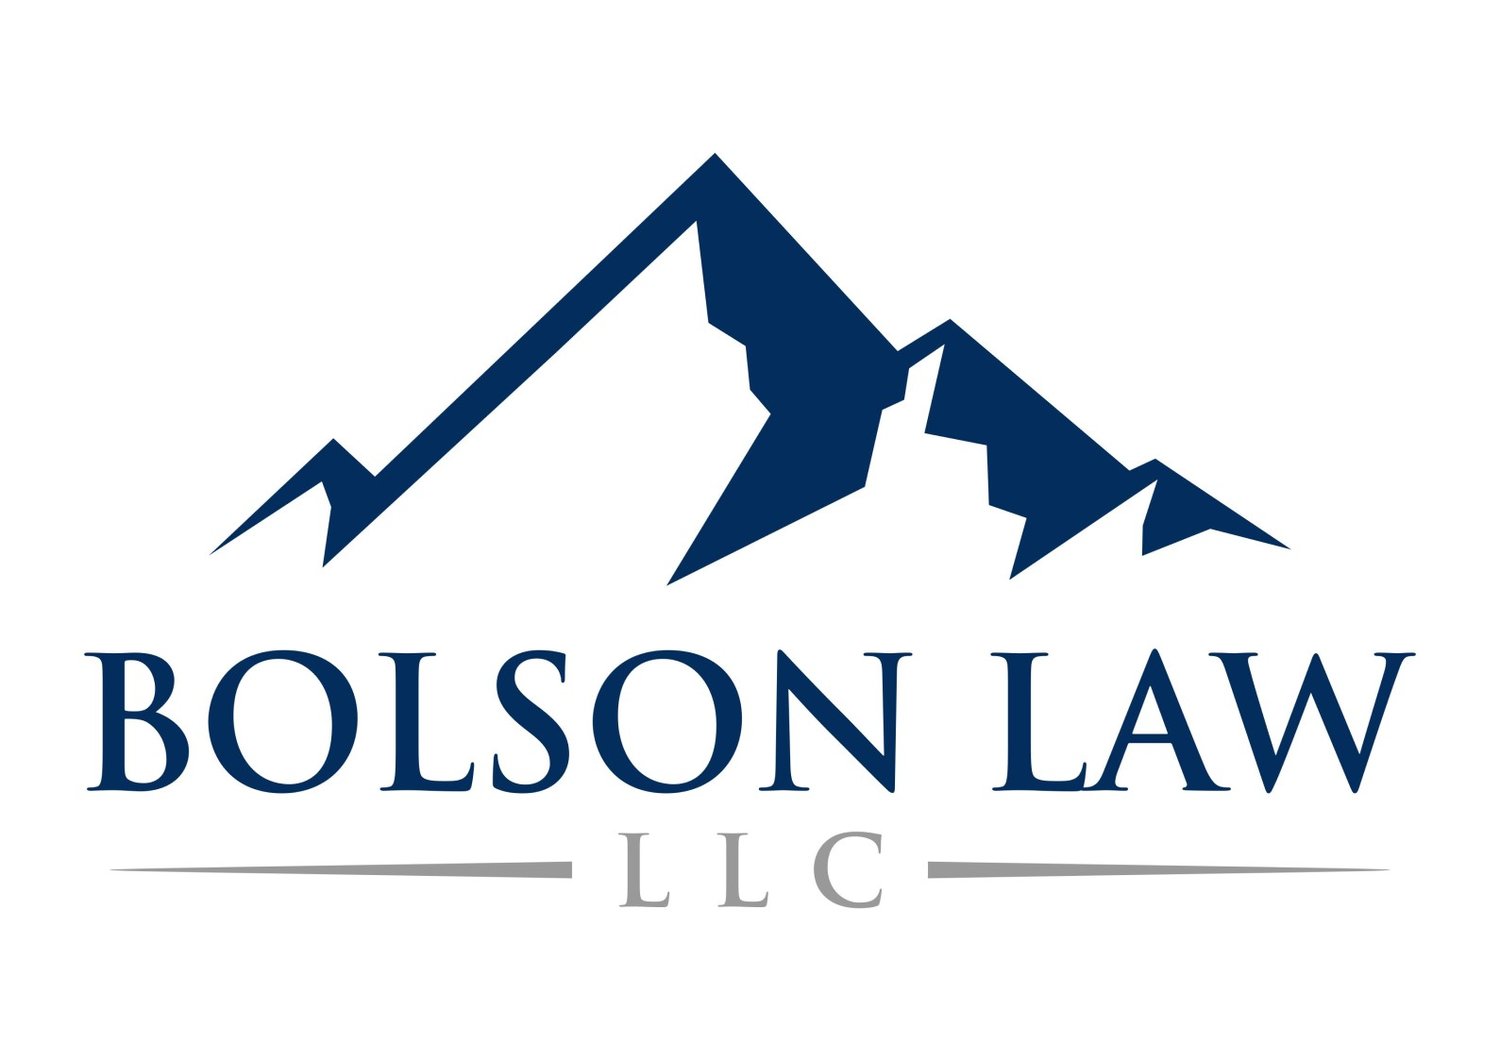 BOLSON LAW LLC